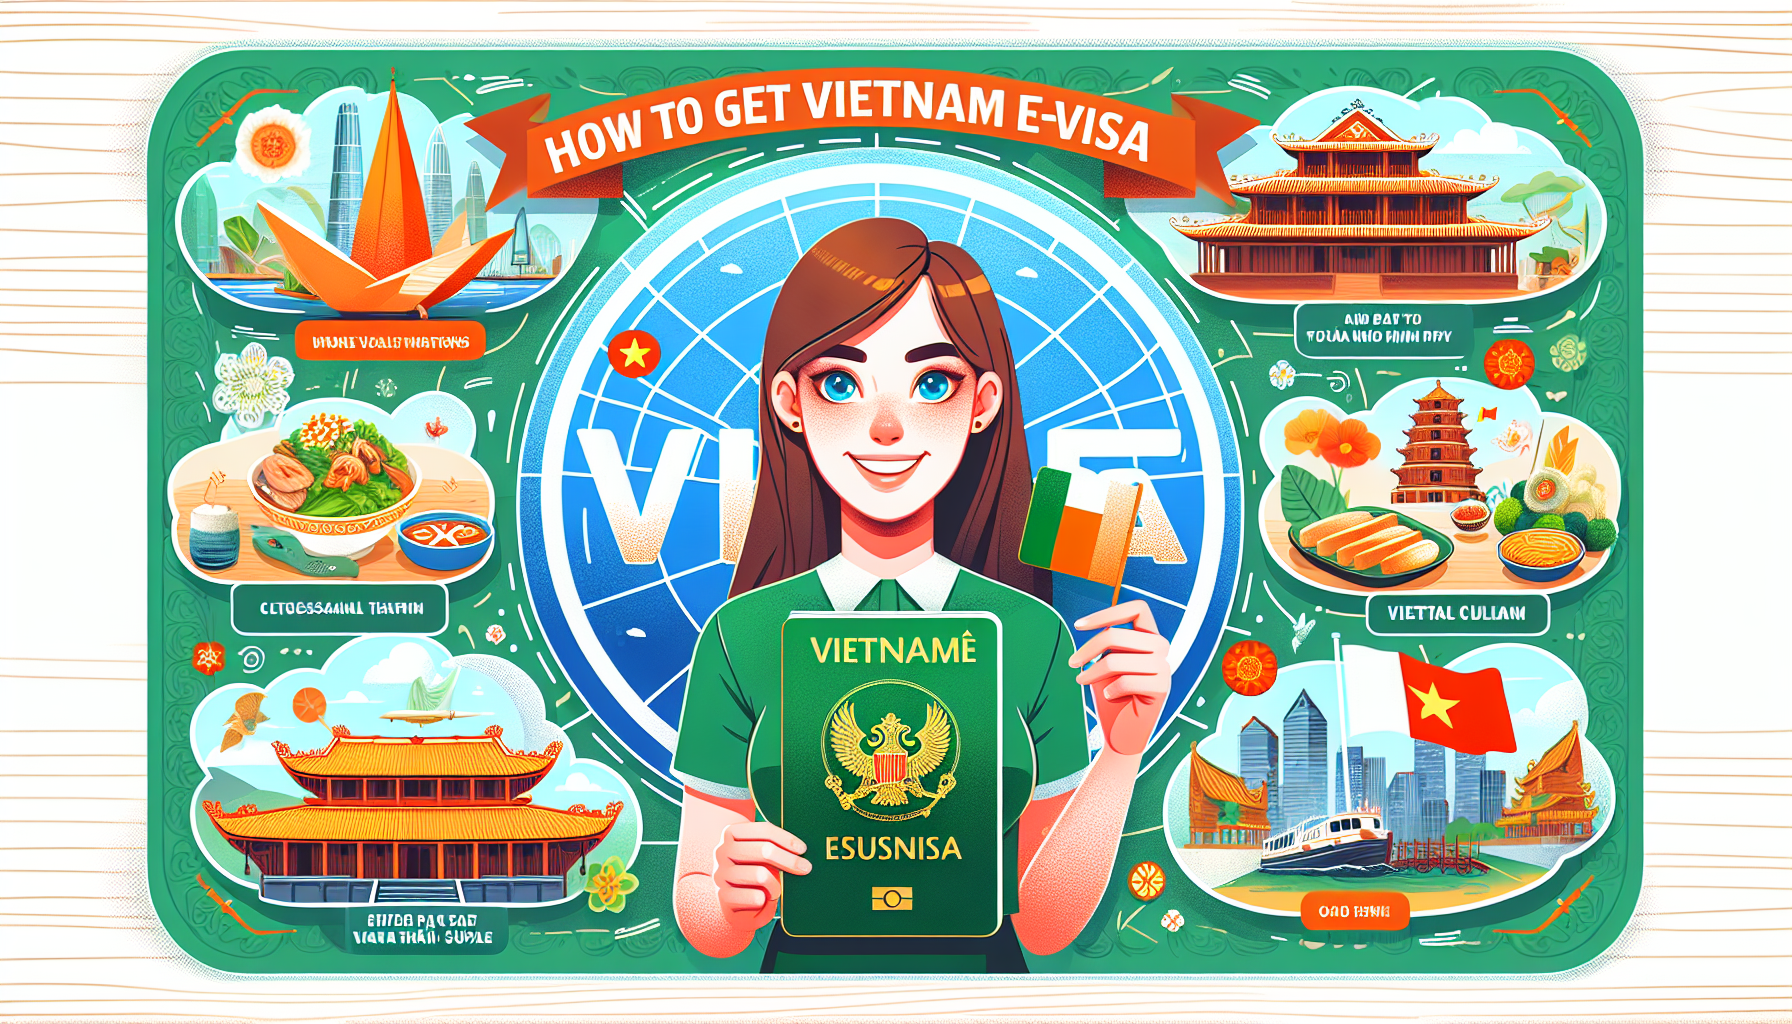 Vietnam Evisa for Citizens from Dublin